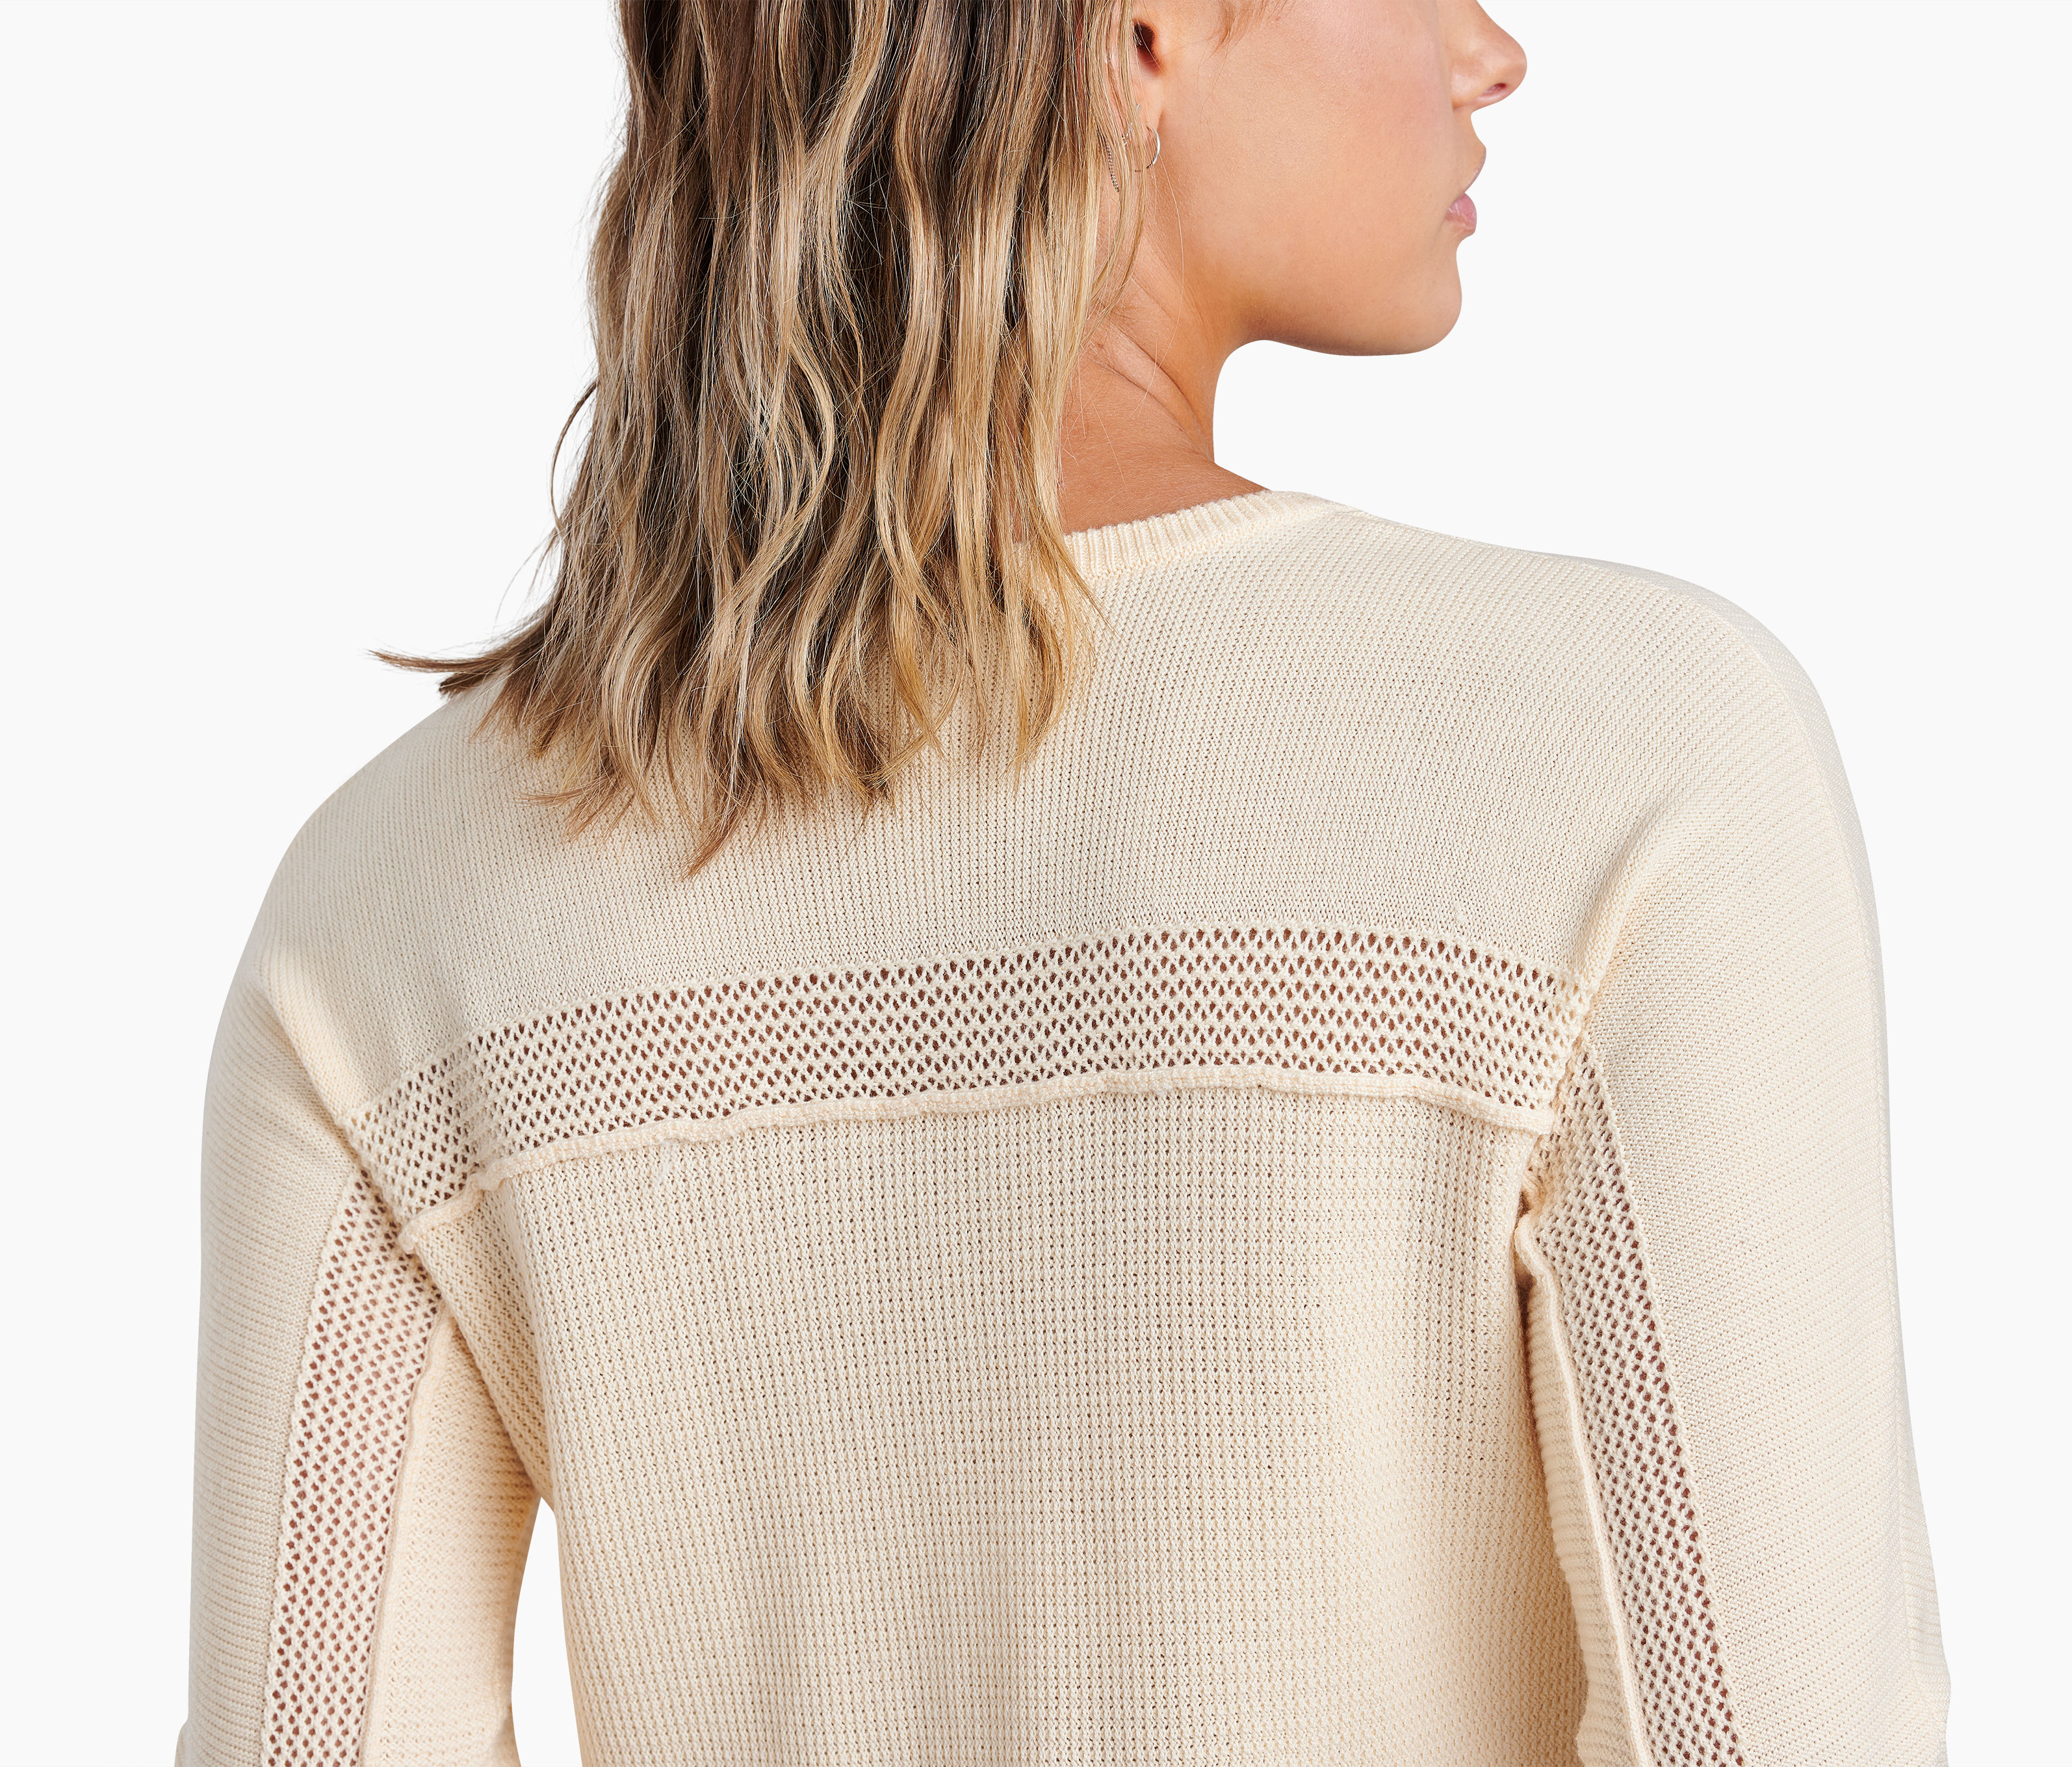 Kosta™ Sweater - Women's Long Sleeves